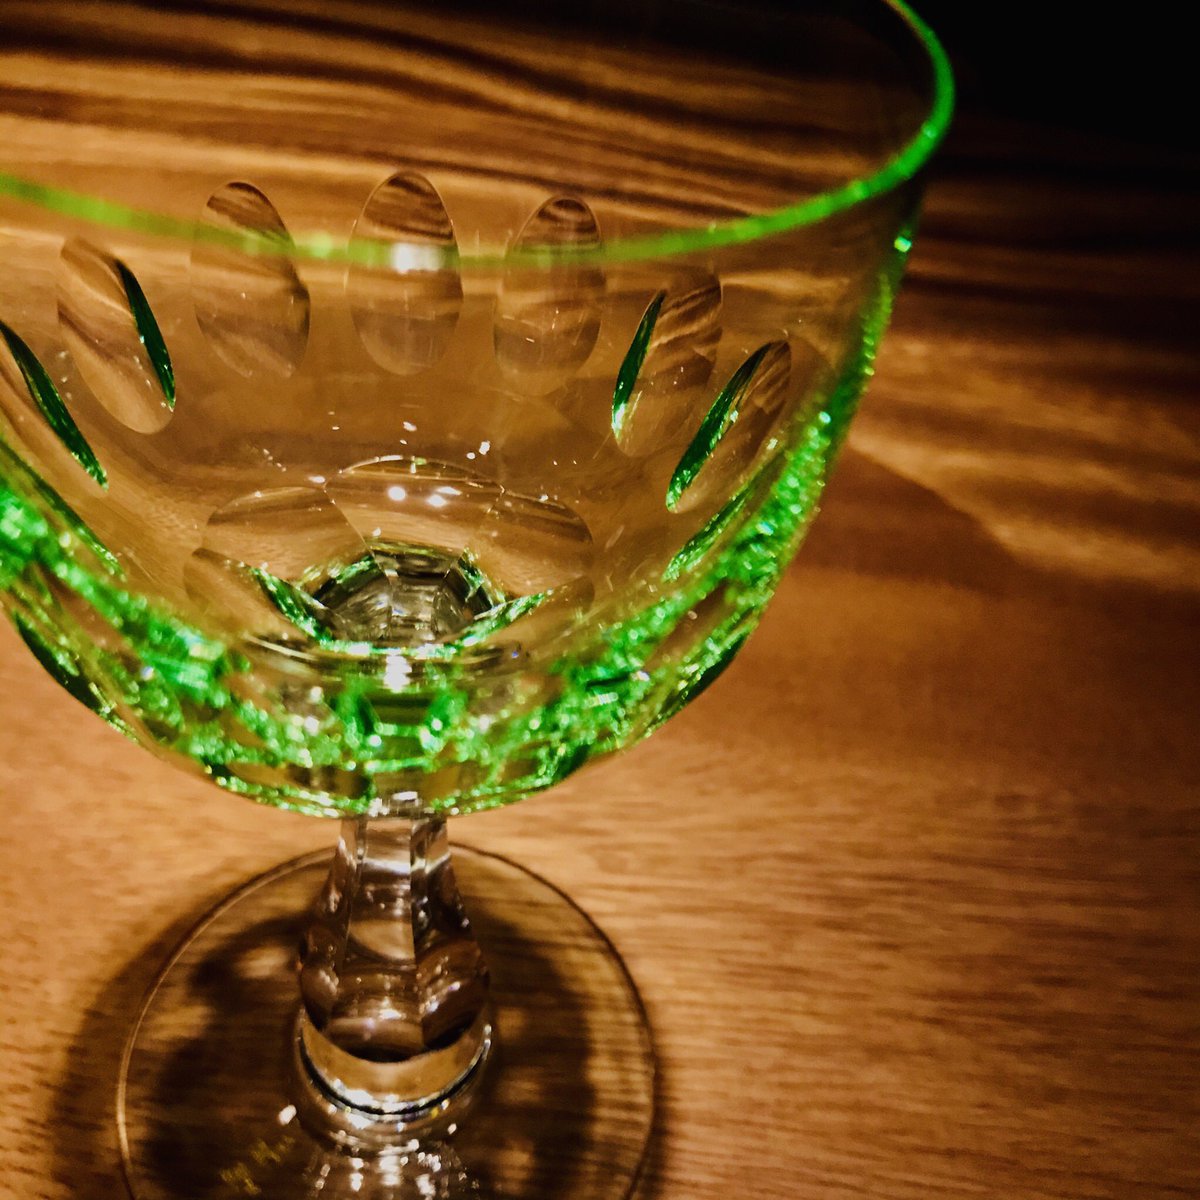 ぱーりんか 10年頃からガラスに ウラン を混ぜて造られた 黄や緑の色彩を持つ透明な ウラングラス メチルアルコールの含有量が比較的高いパーリンカと放射性物質のウランというイケナイもの同士の掛け合わせ 退廃的な嗜好 みたいな 的な たまら